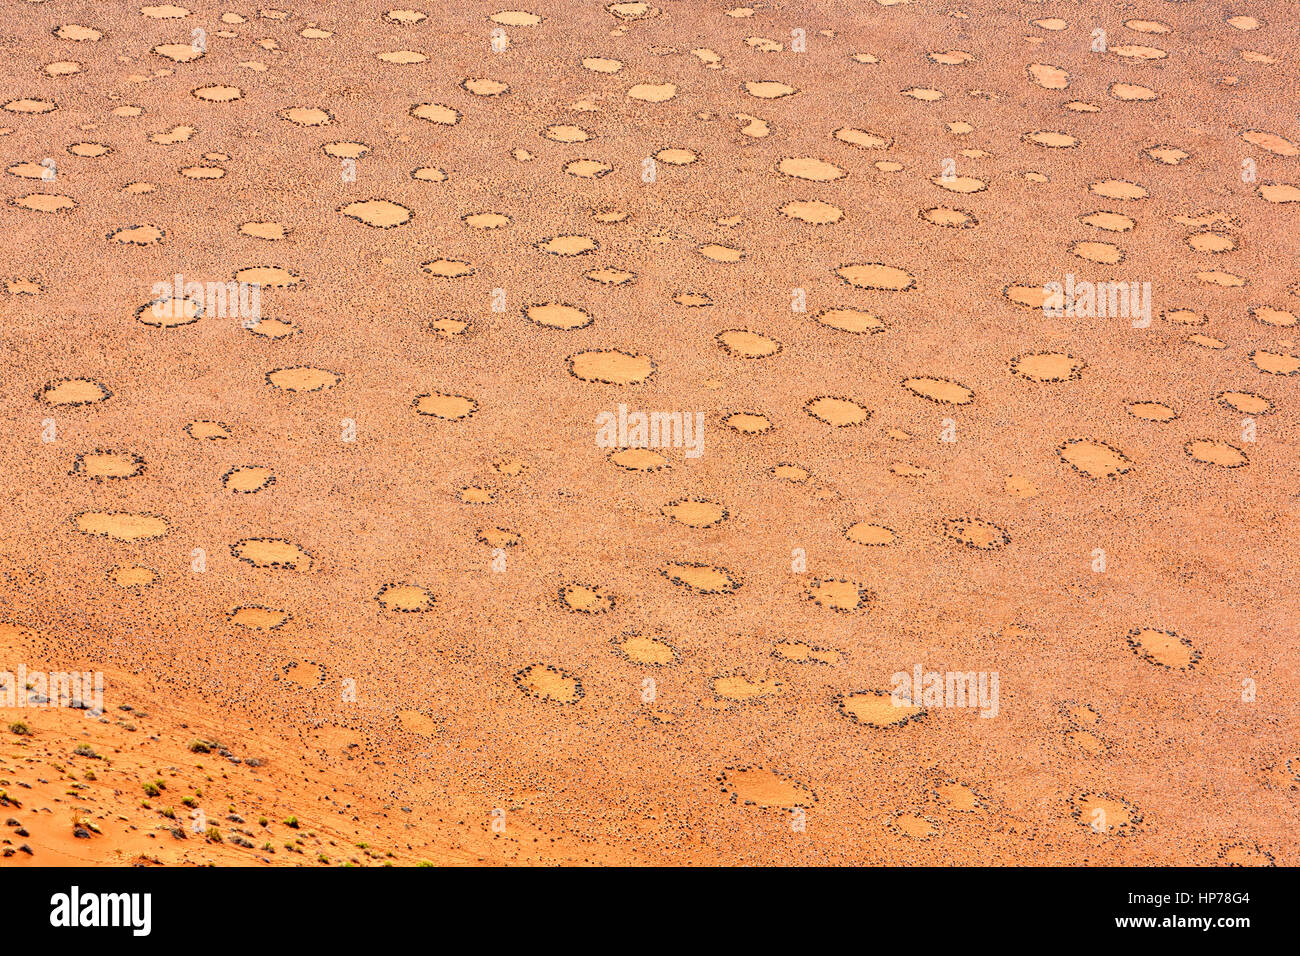 Les cercles de fées, Sesriem, Sossusvlei, Namib-Naukluft National Park, Namibie, Afrique Banque D'Images